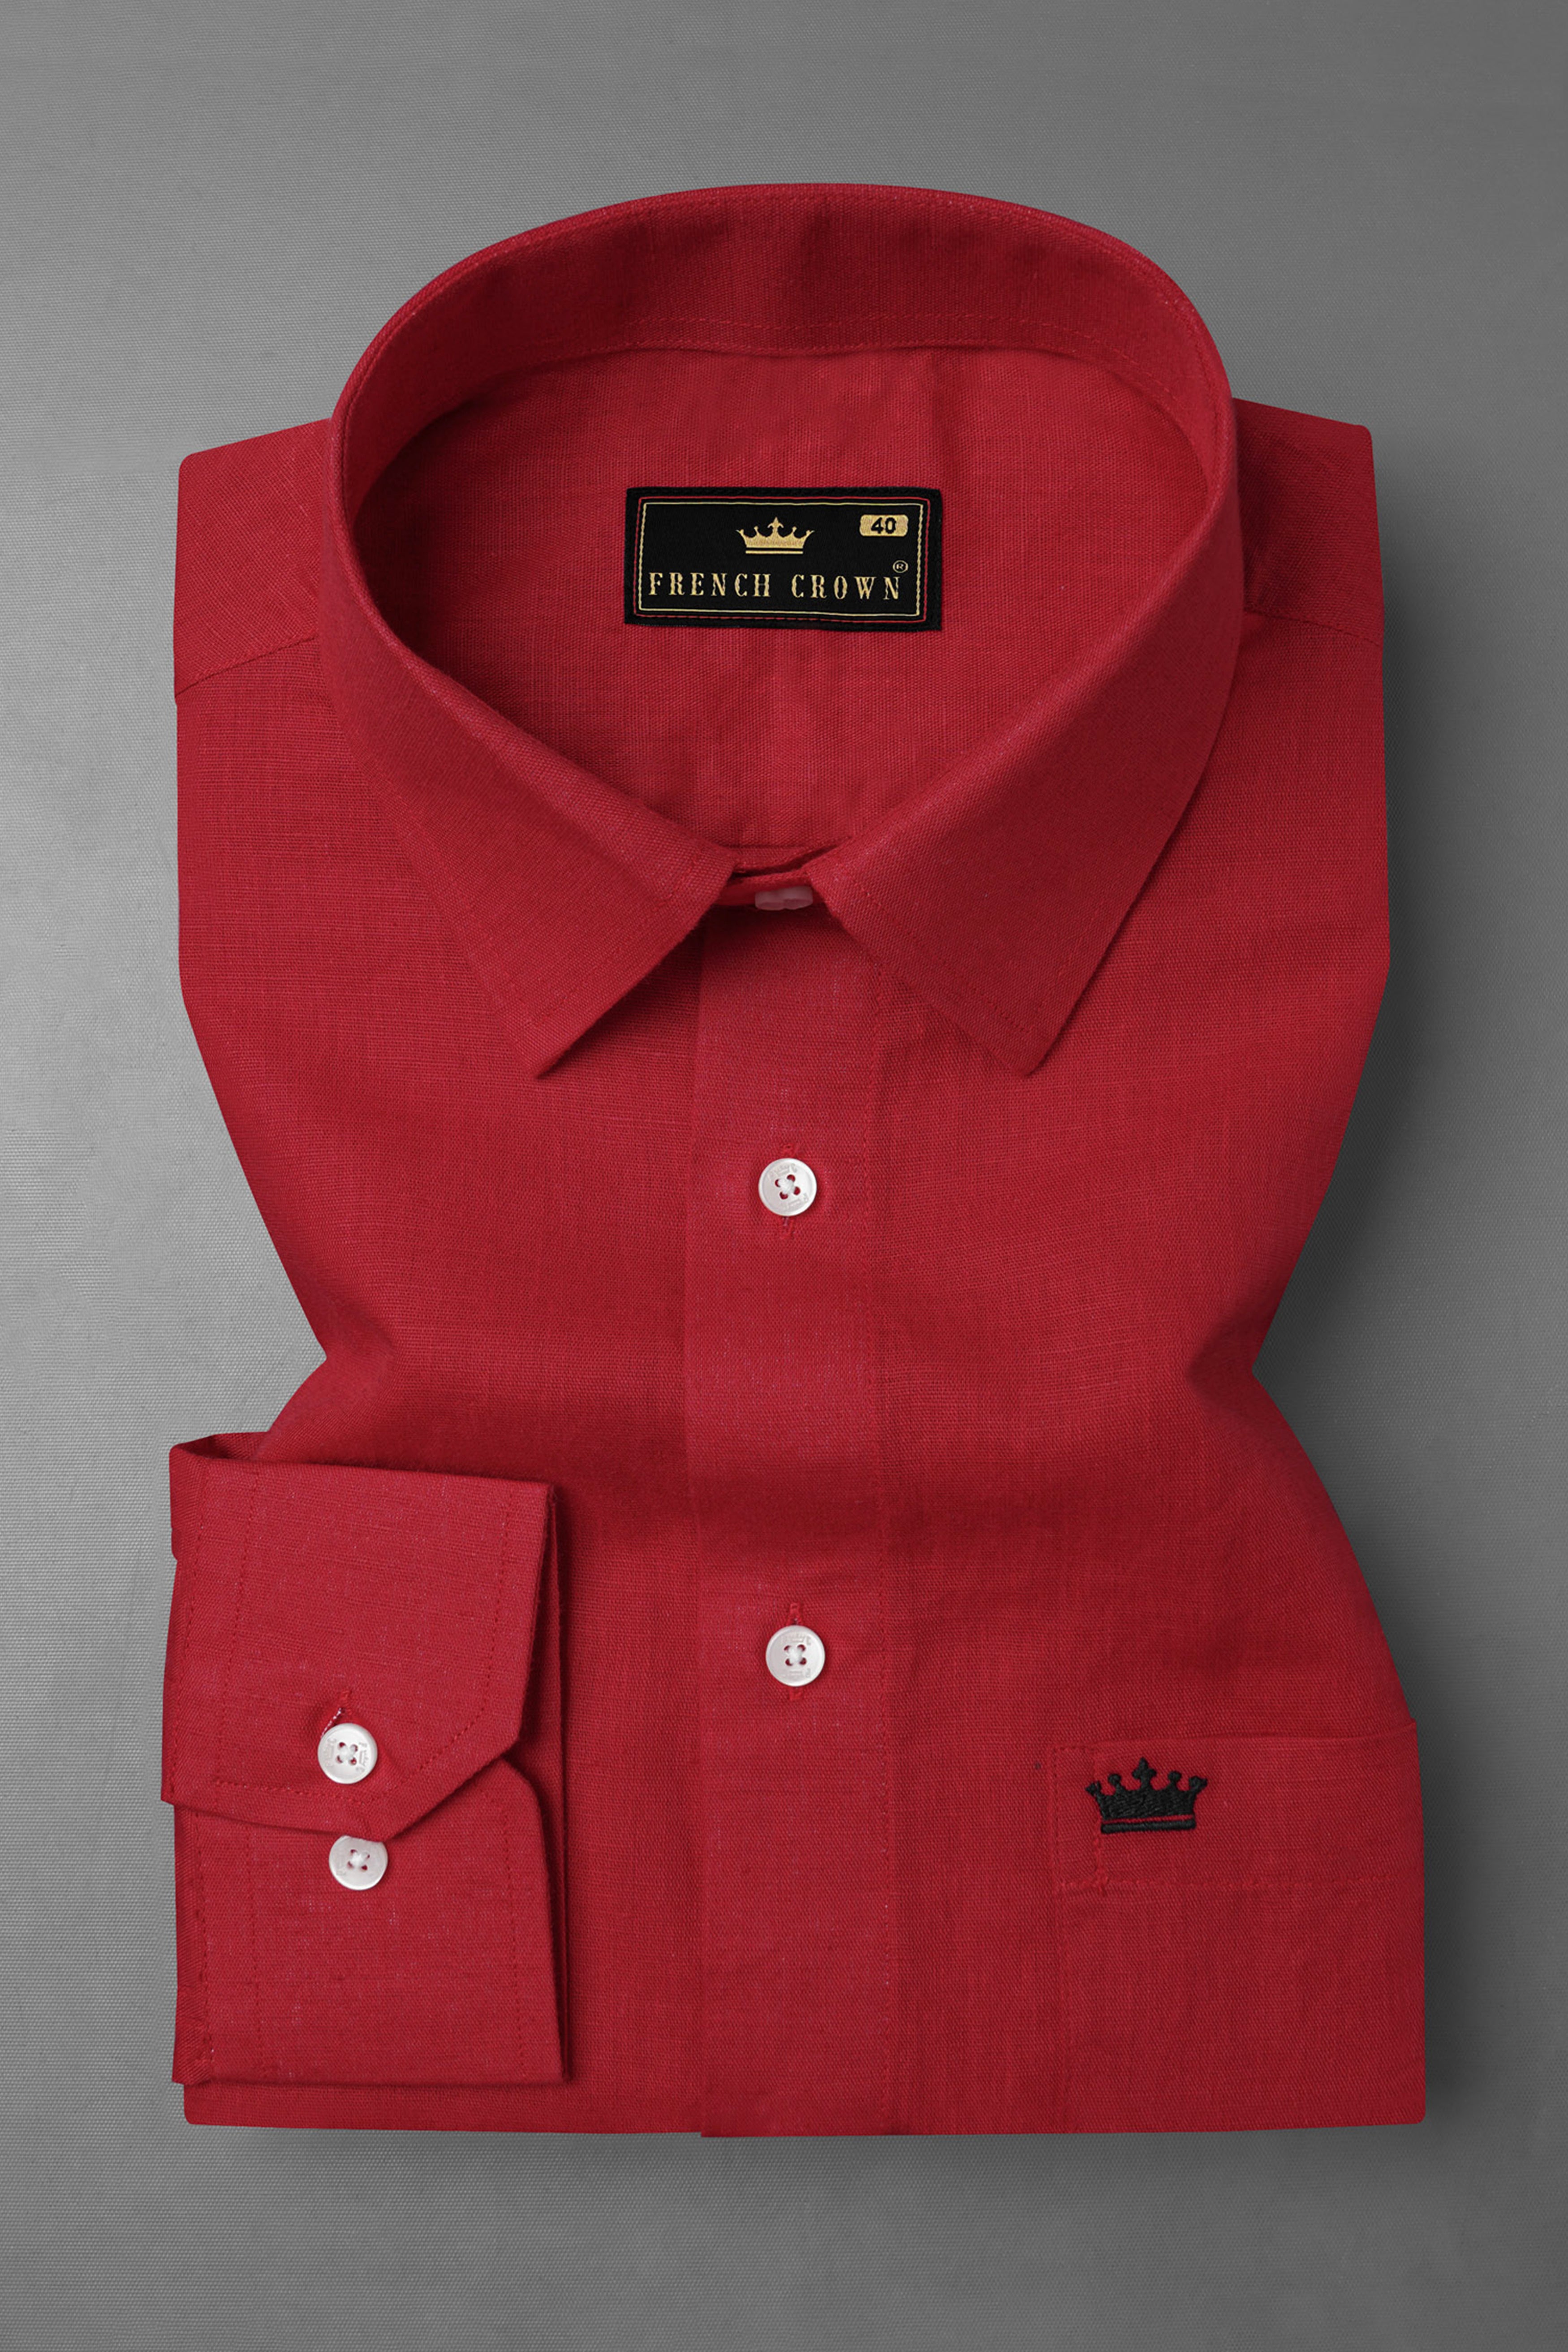 Vivid Auburn Red Luxurious Linen Shirt